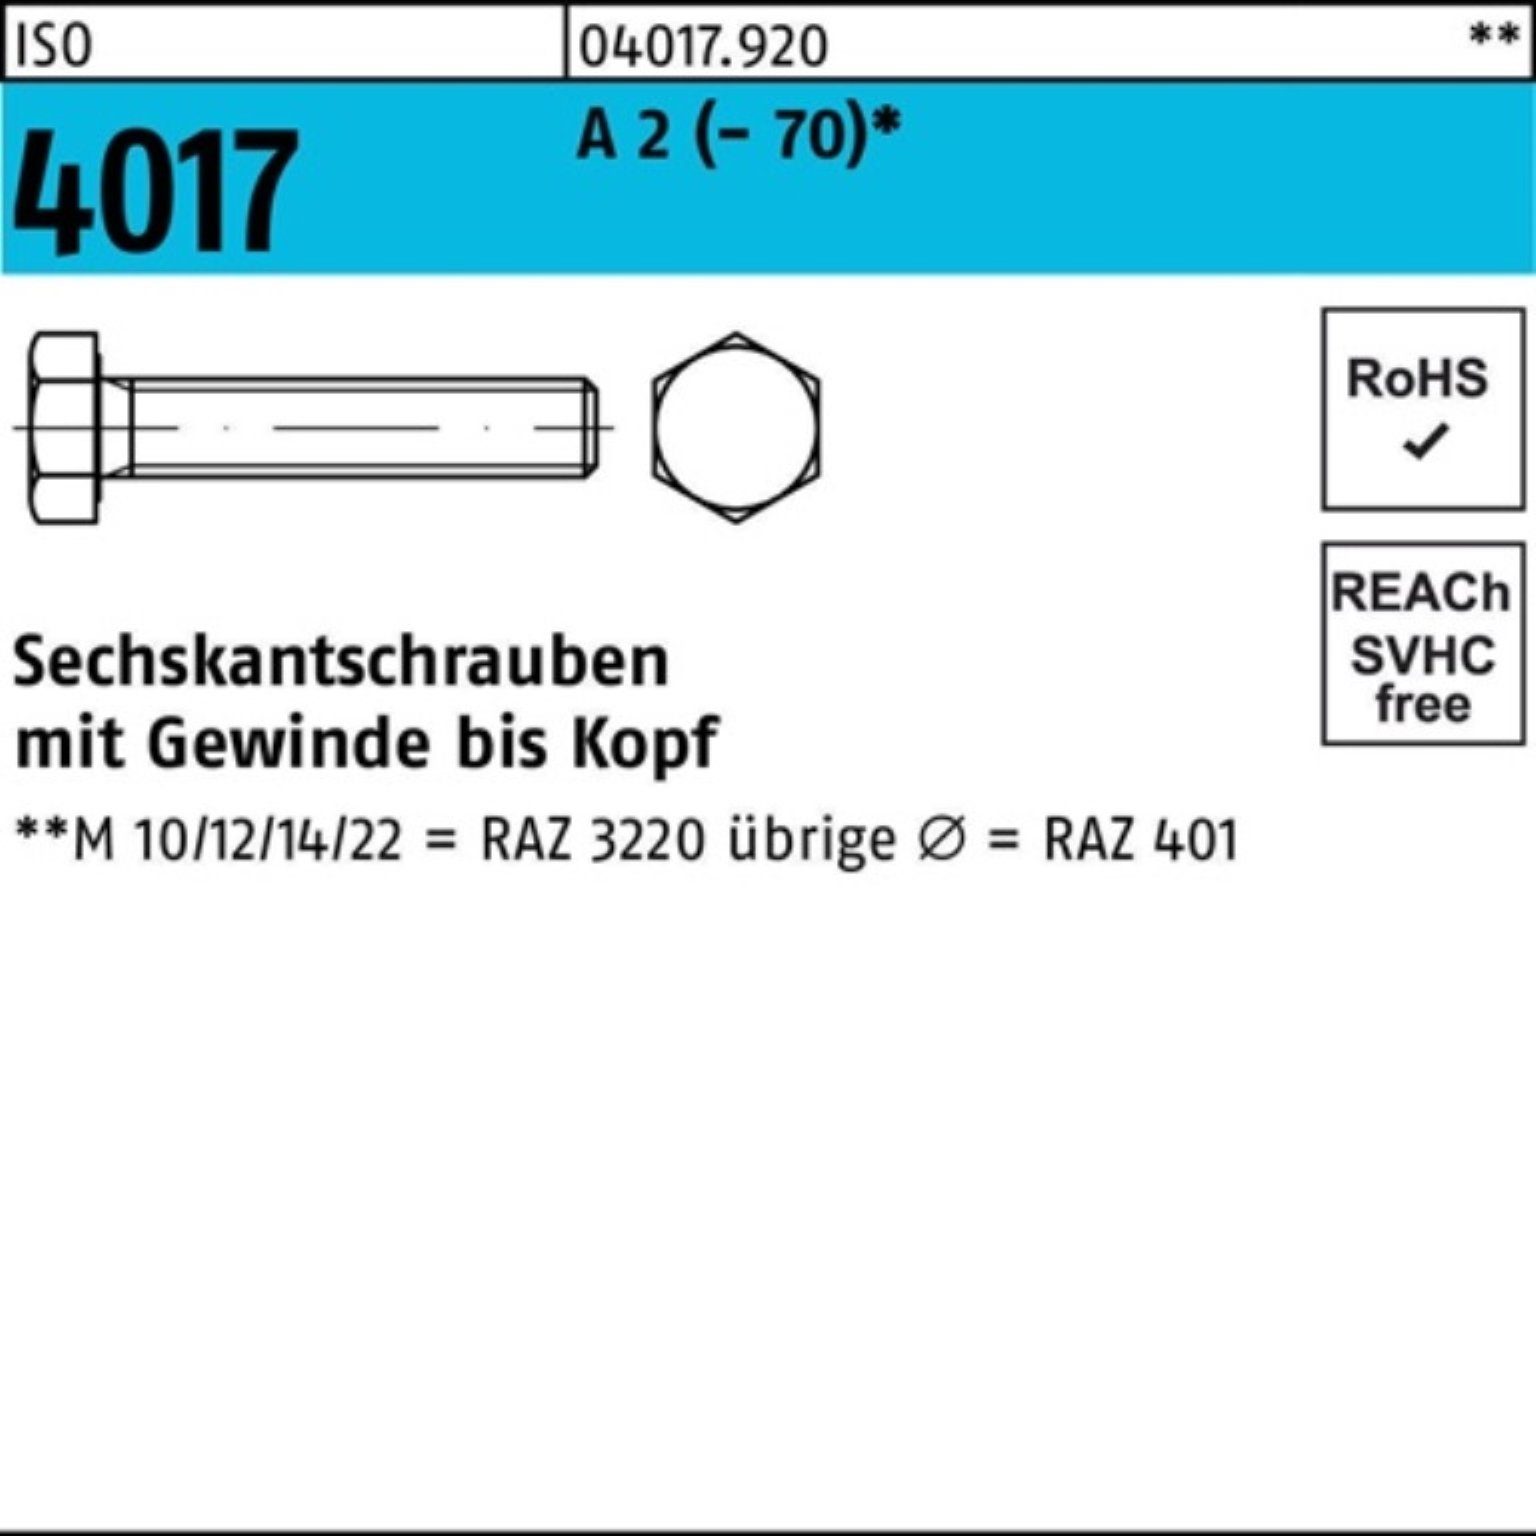 Bufab Sechskantschraube A 100er 10 2 M24x ISO Stück Pack 70 Sechskantschraube VG 4017 (70)